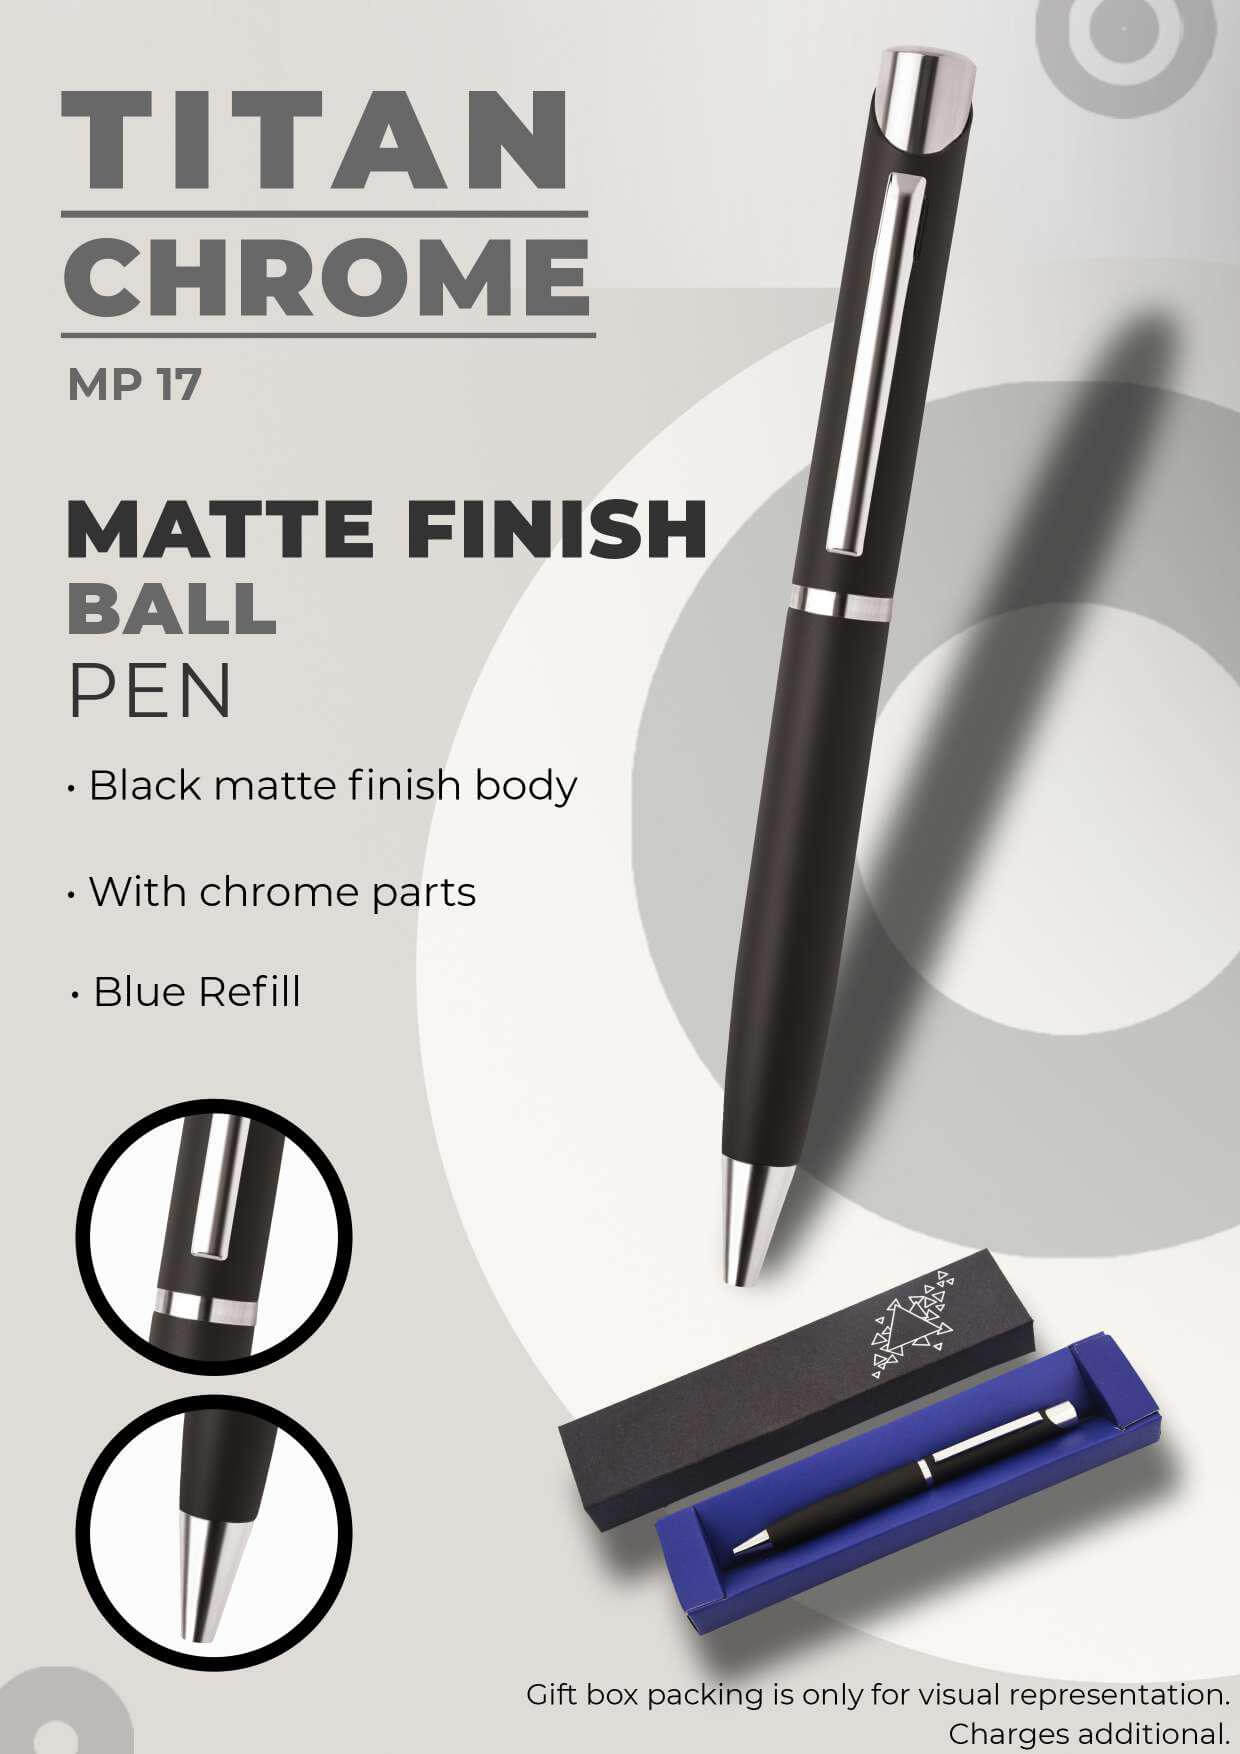 Matte Finish Ball Pen Titan Chrome